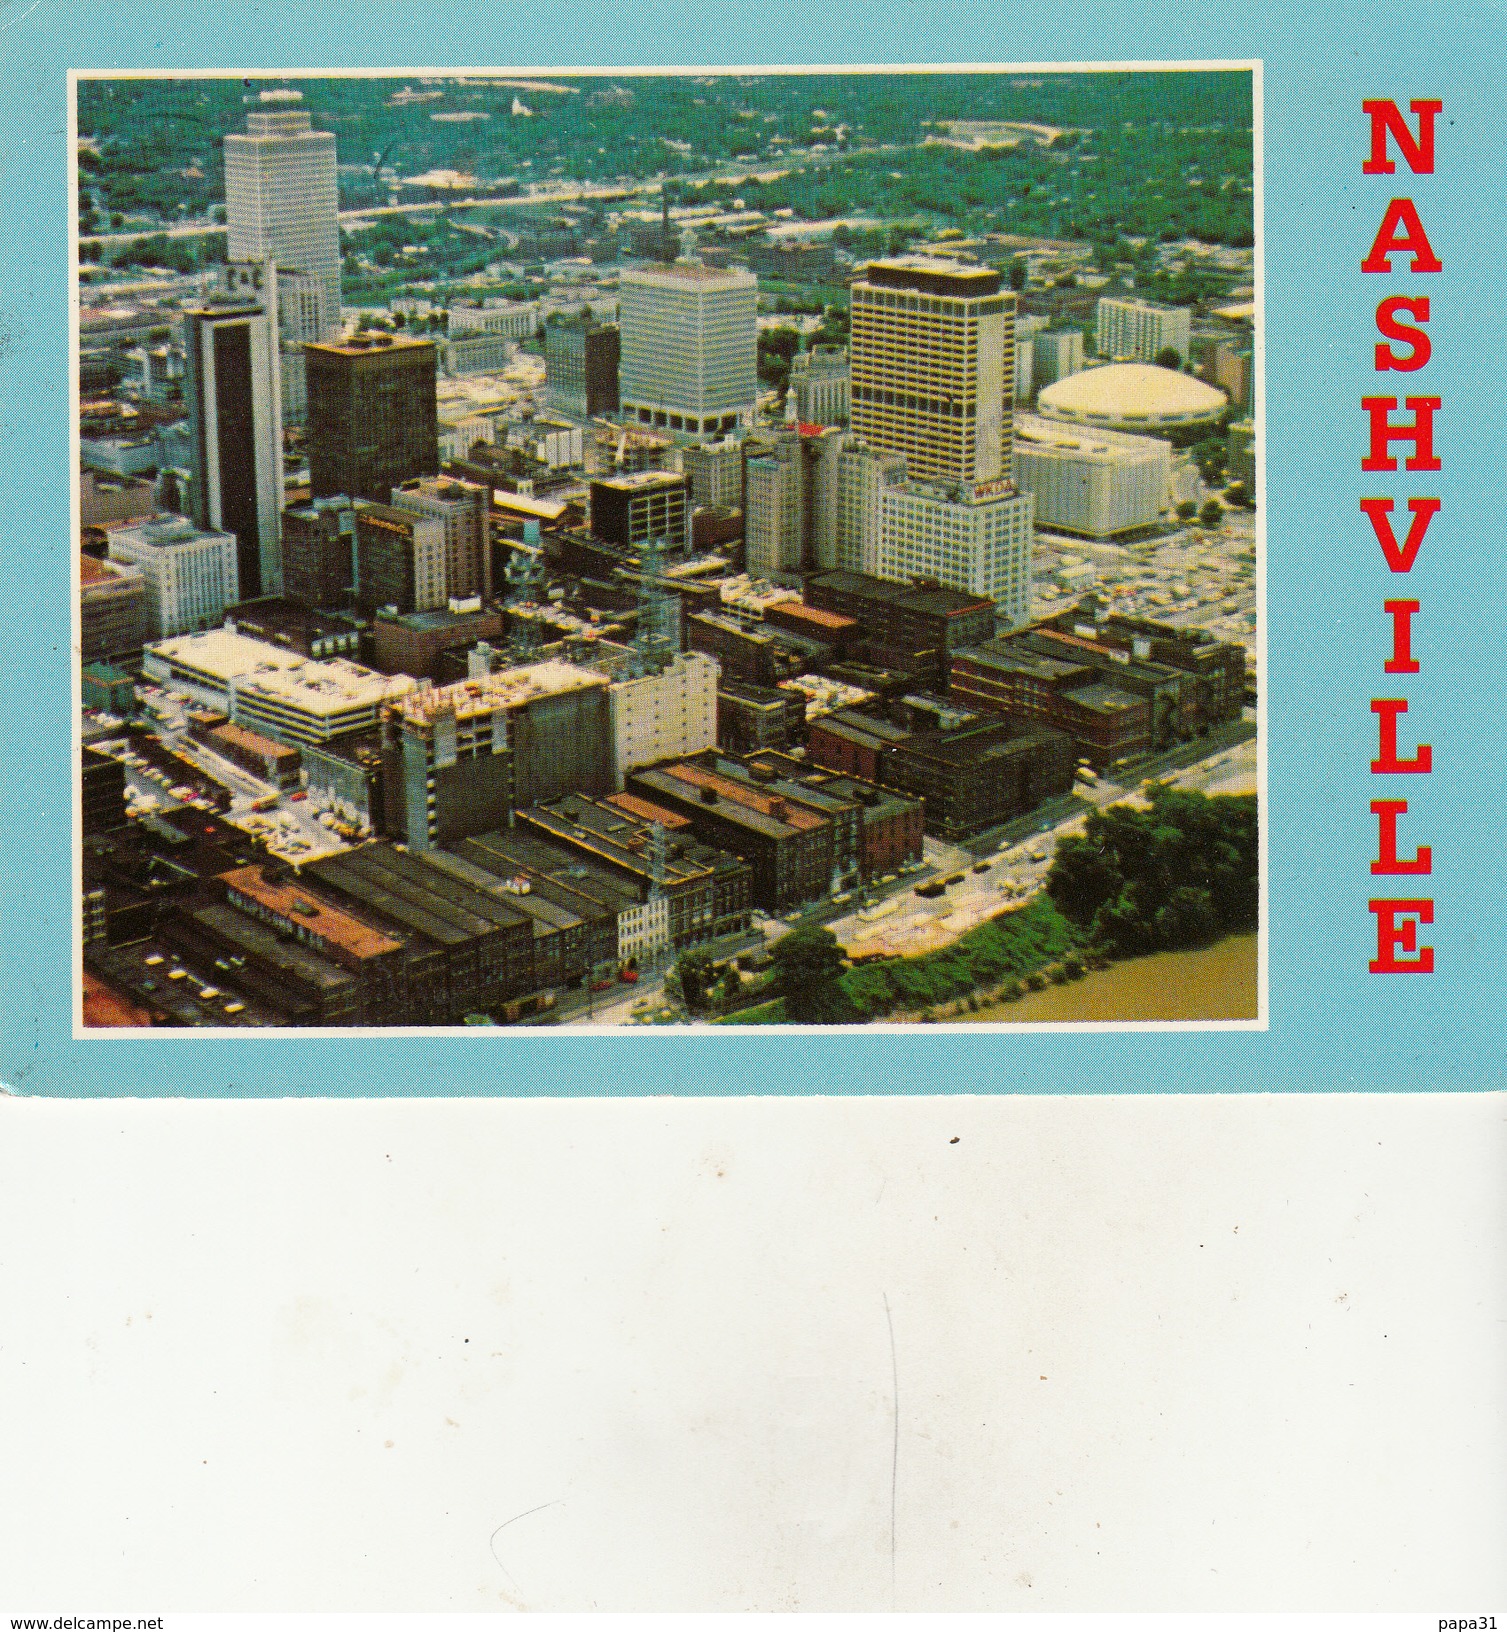 NASHVILLE TENNESSEE - Nashville